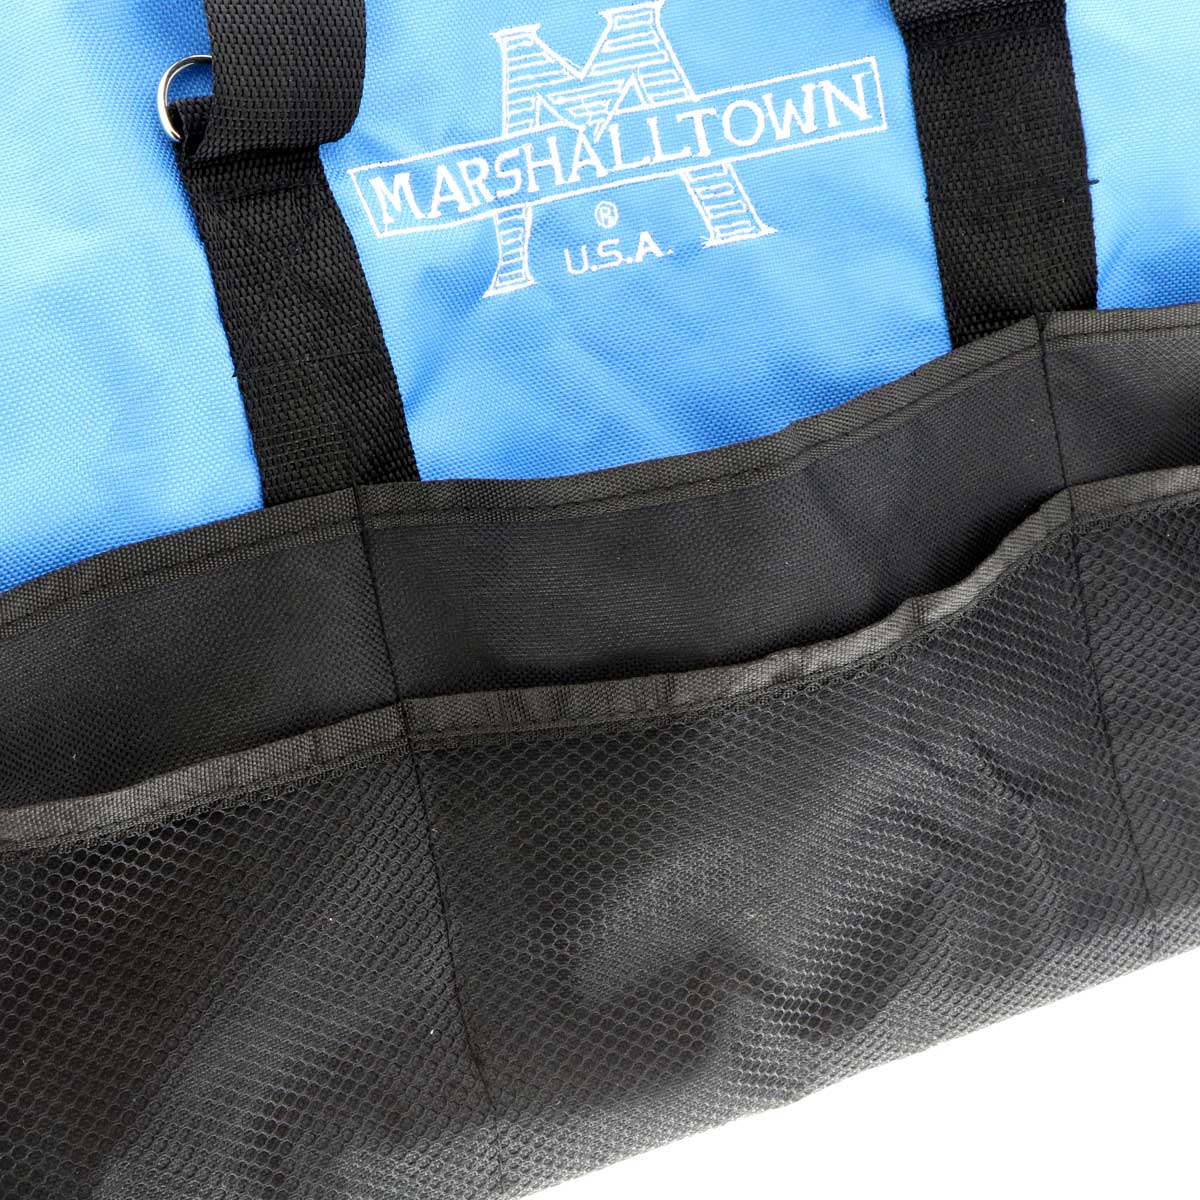 Marshalltown 20" Nylon Tool Bag